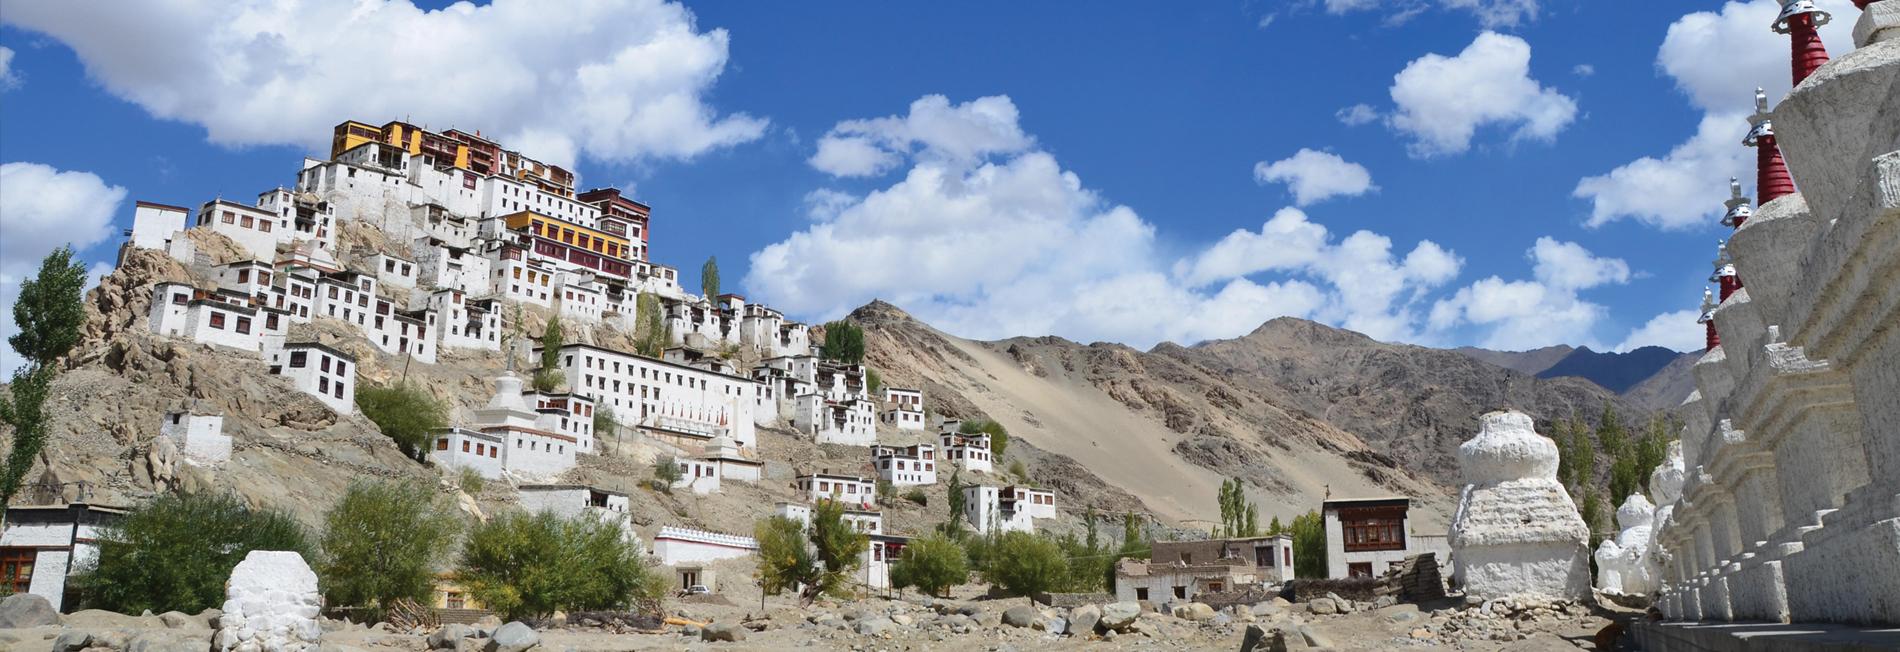 Inde - Ladakh